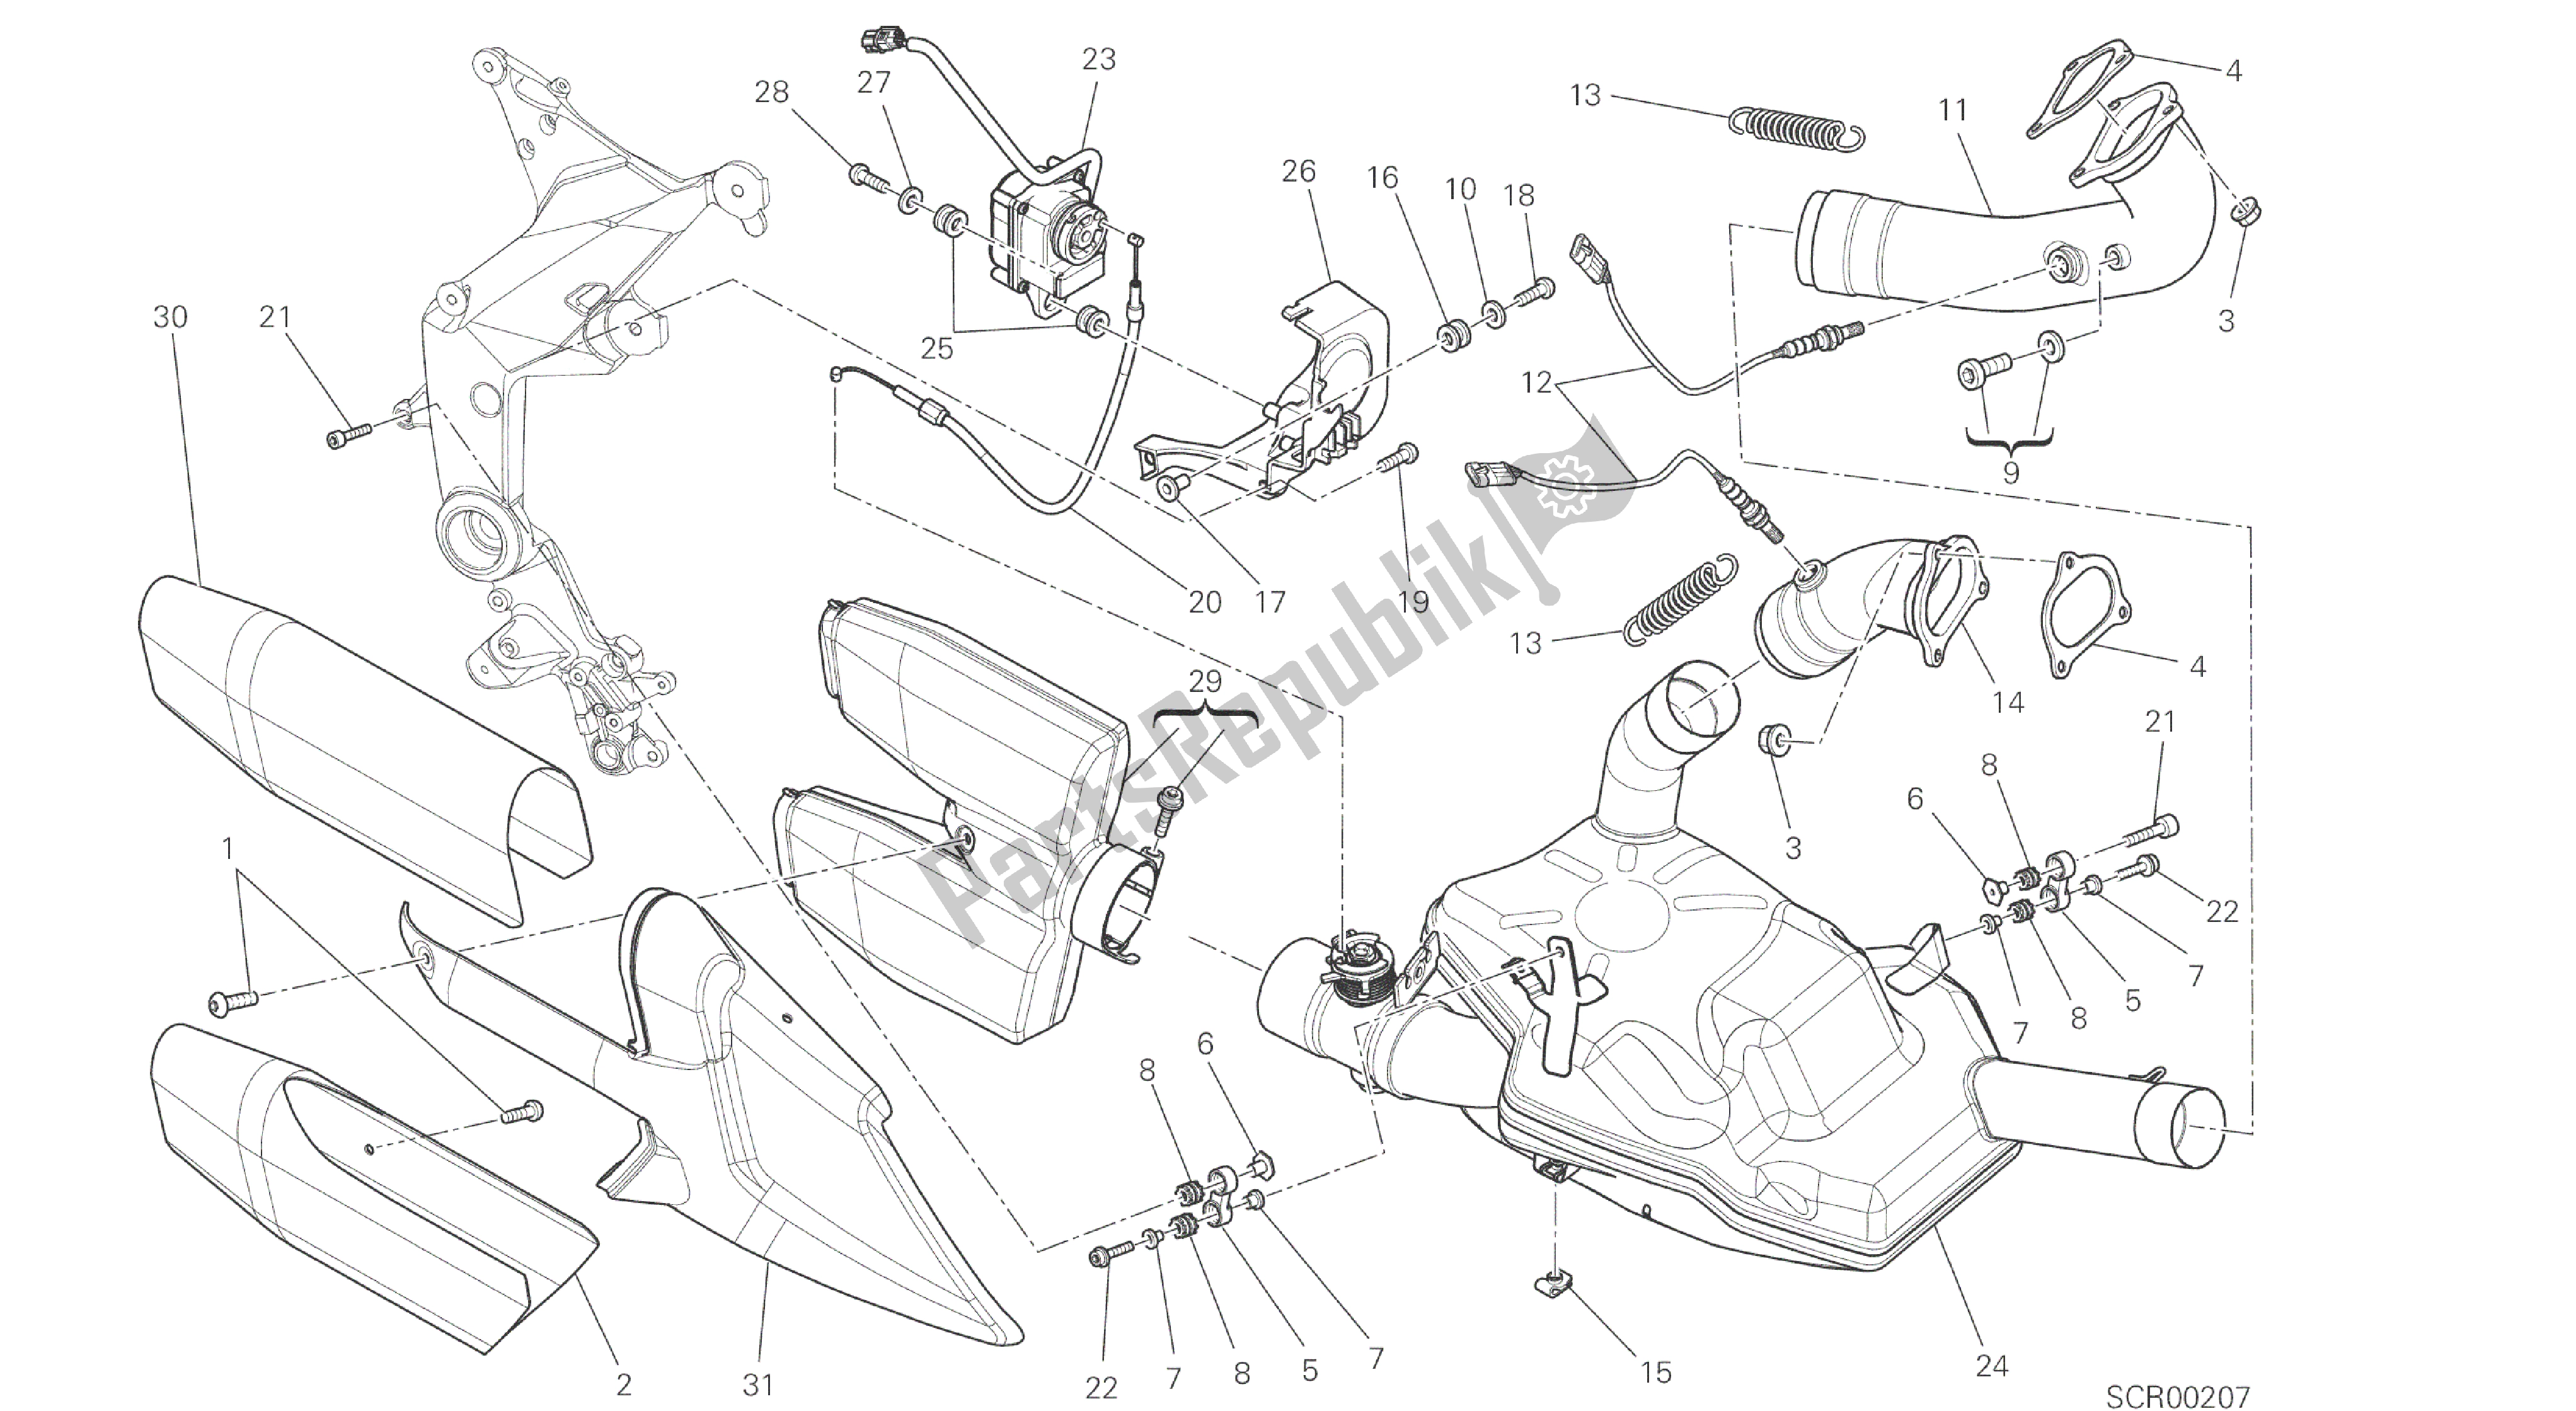 Todas las partes para Dibujo 019 - Sistema De Escape [mod: Ms1200st; Xst: Marco De Grupo Aus, Chn, Eur, Fra, Jap, Tha] de Ducati Multistrada S Touring 1200 2014